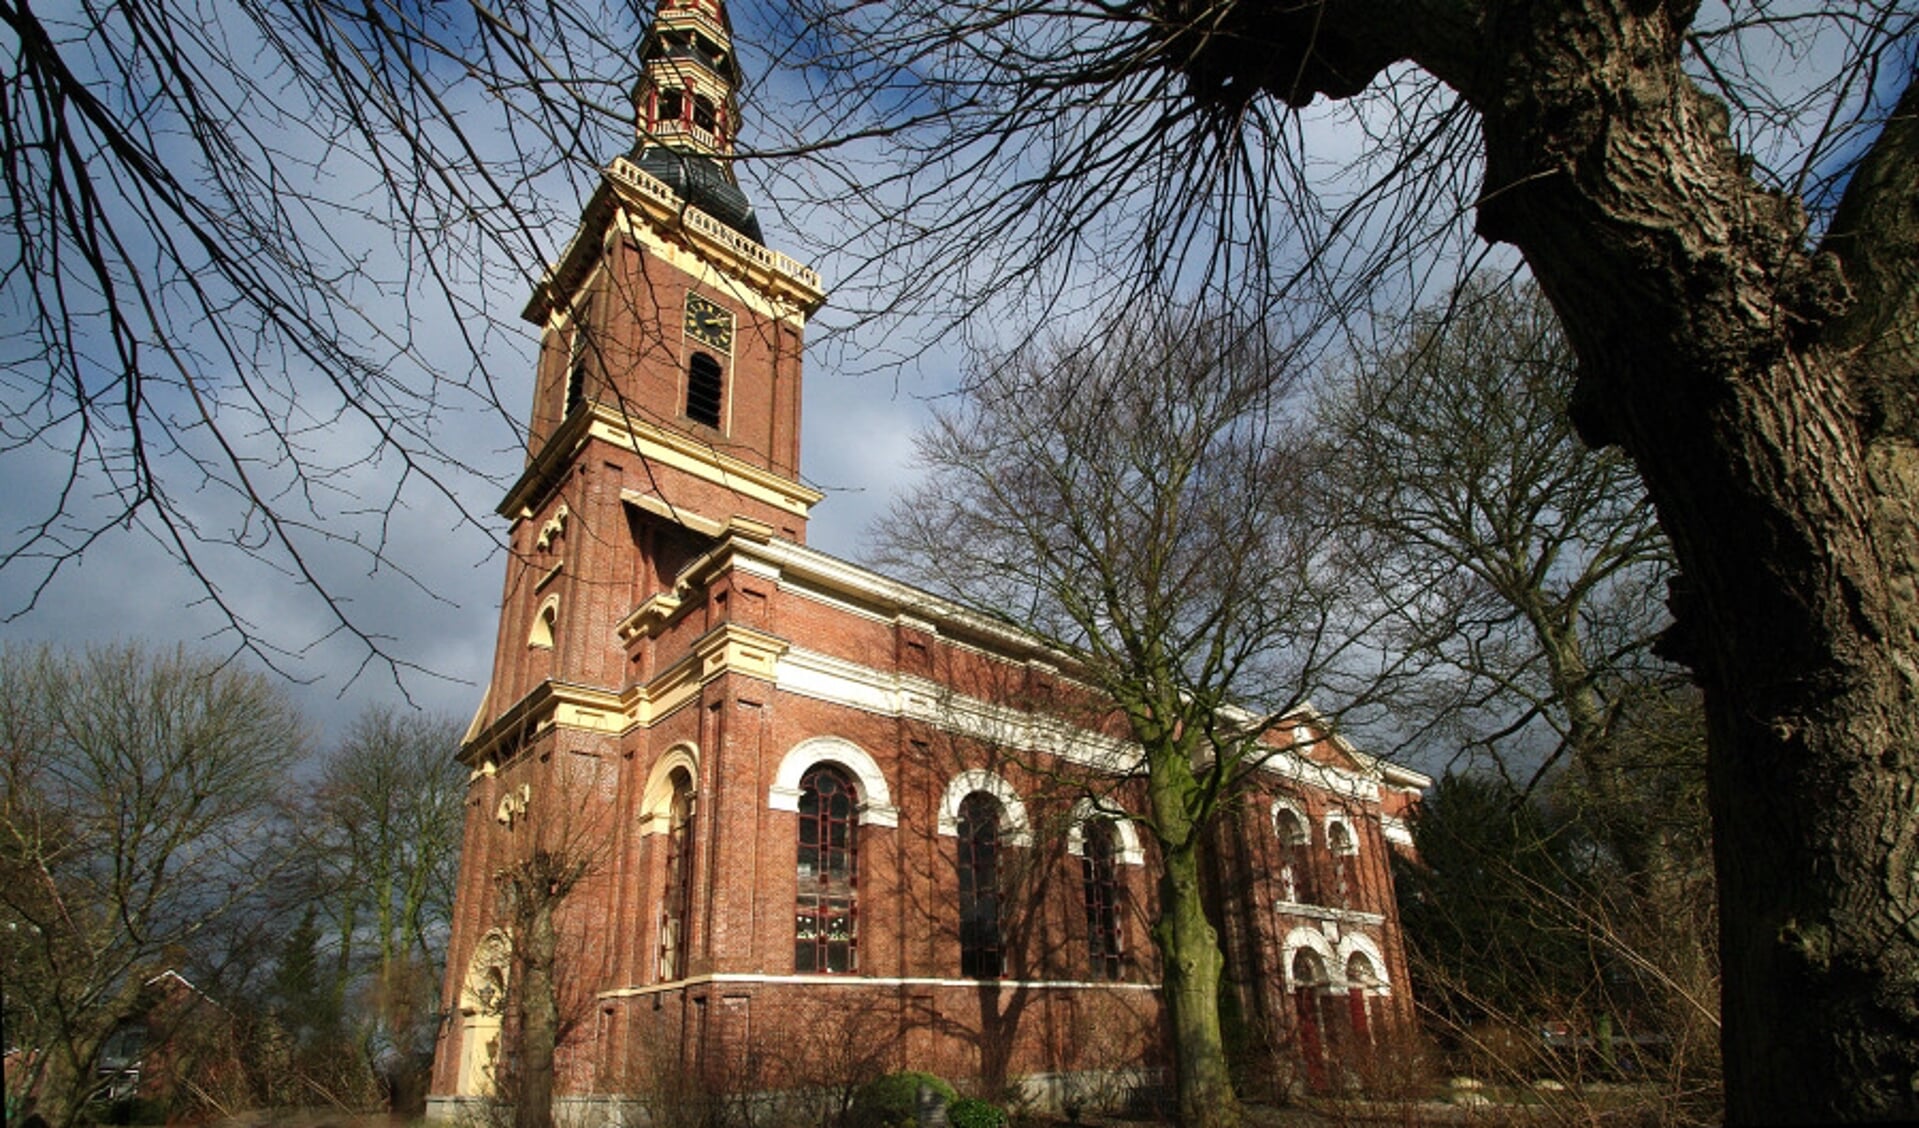 De kerk in Farmsum gaat weer open voor het publiek. Bezichtigingen zijn dus weer mogelijk.